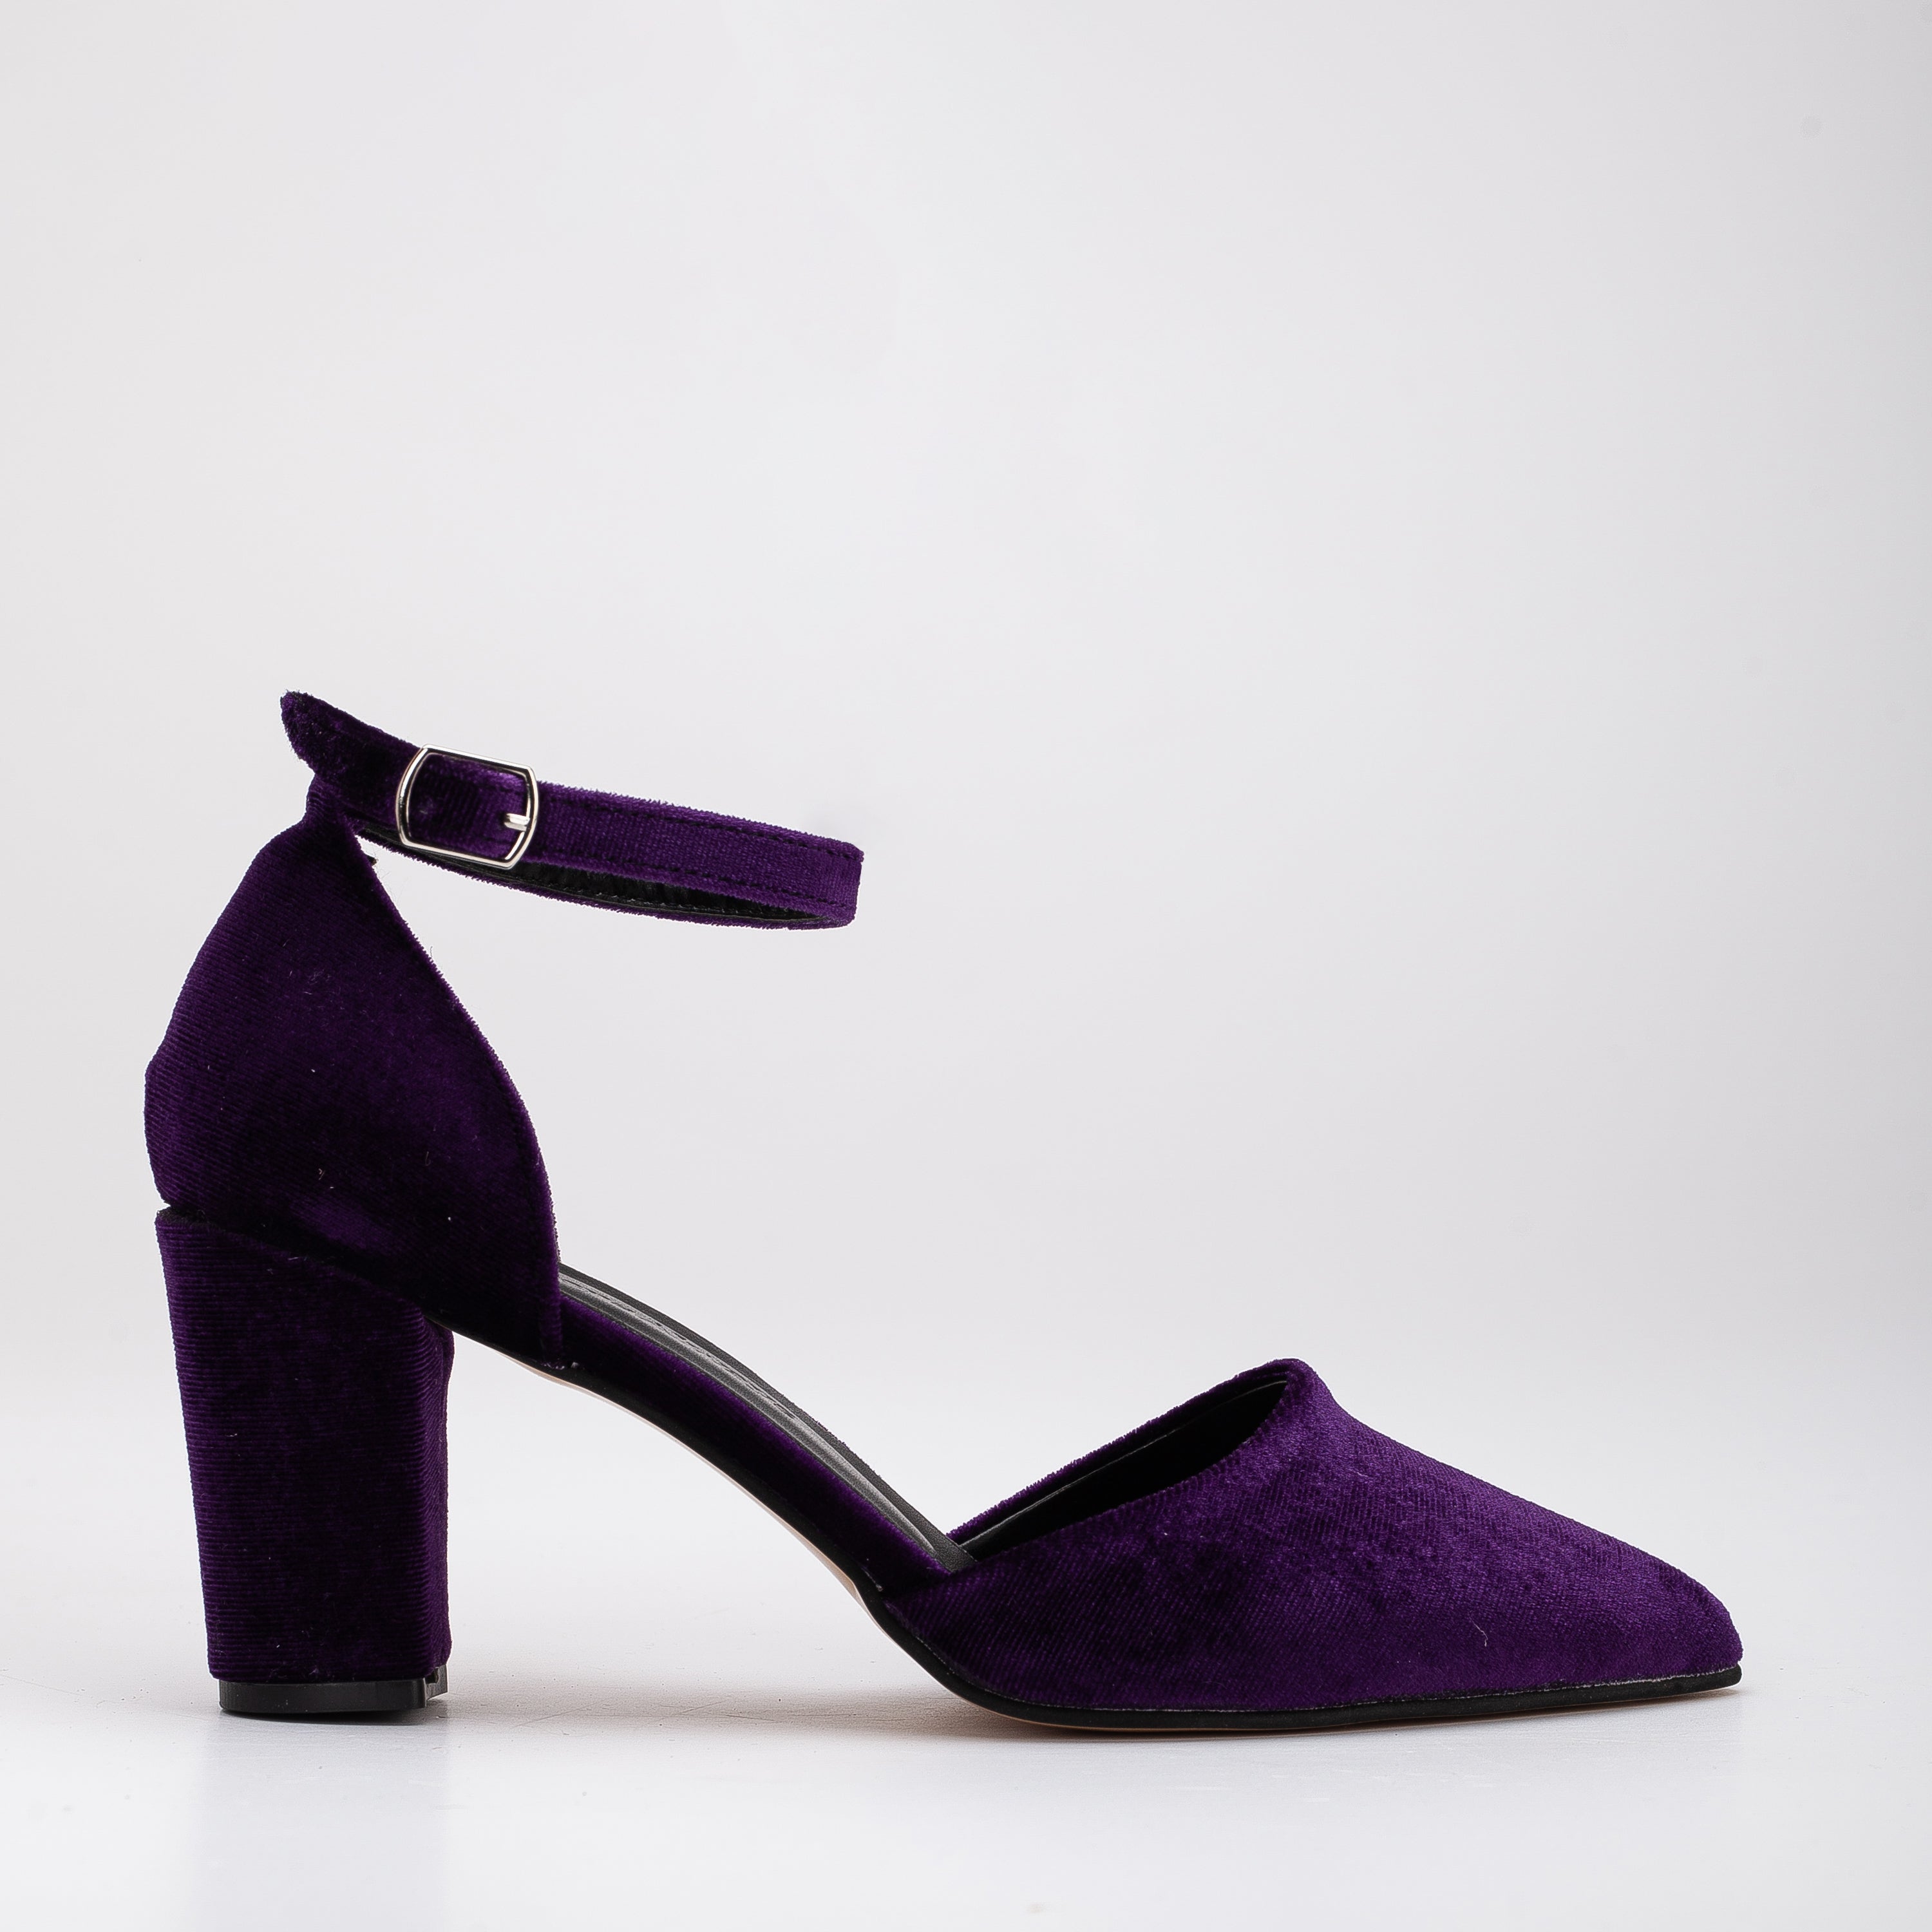 deep purple heels with ankle wraps | Heels, High heels, Heels outfits